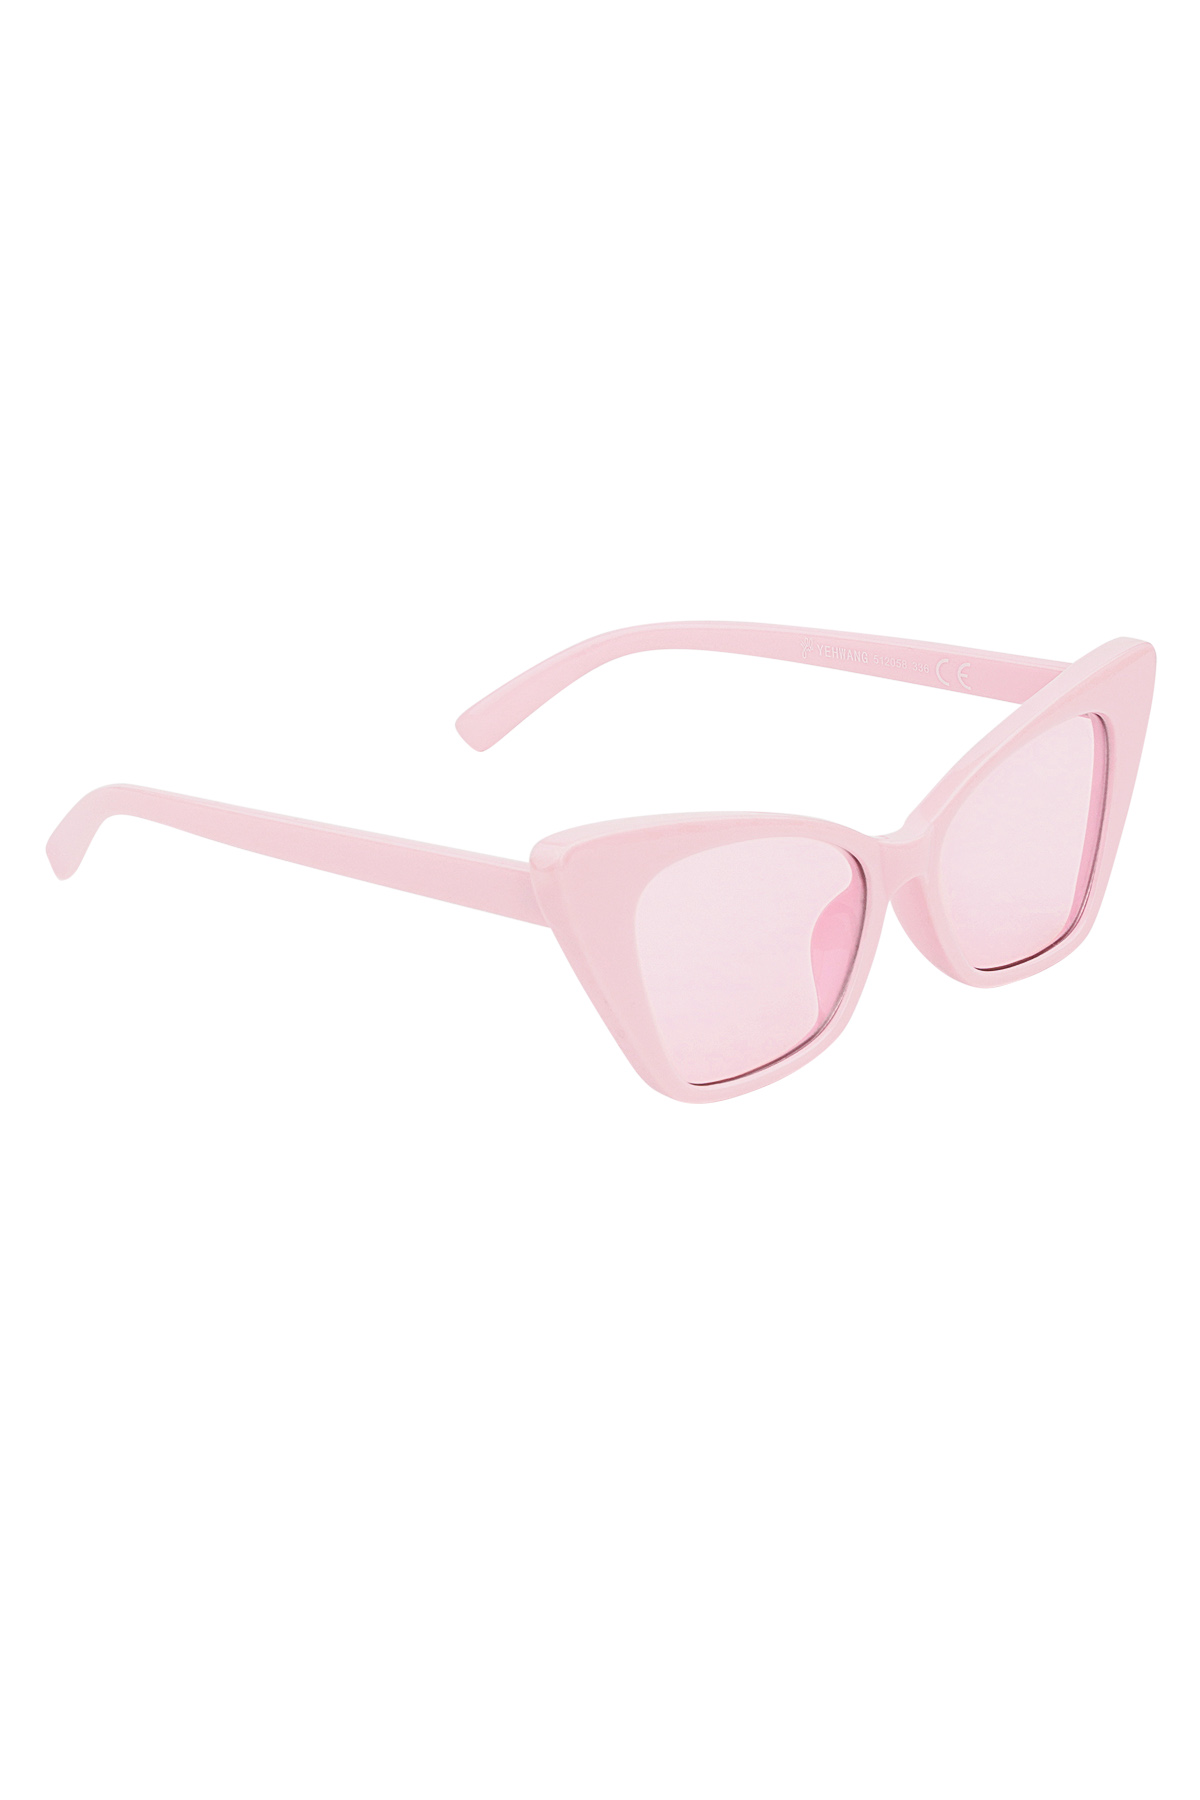 Sonnenbrille mit einfarbigem Rahmen – rosa